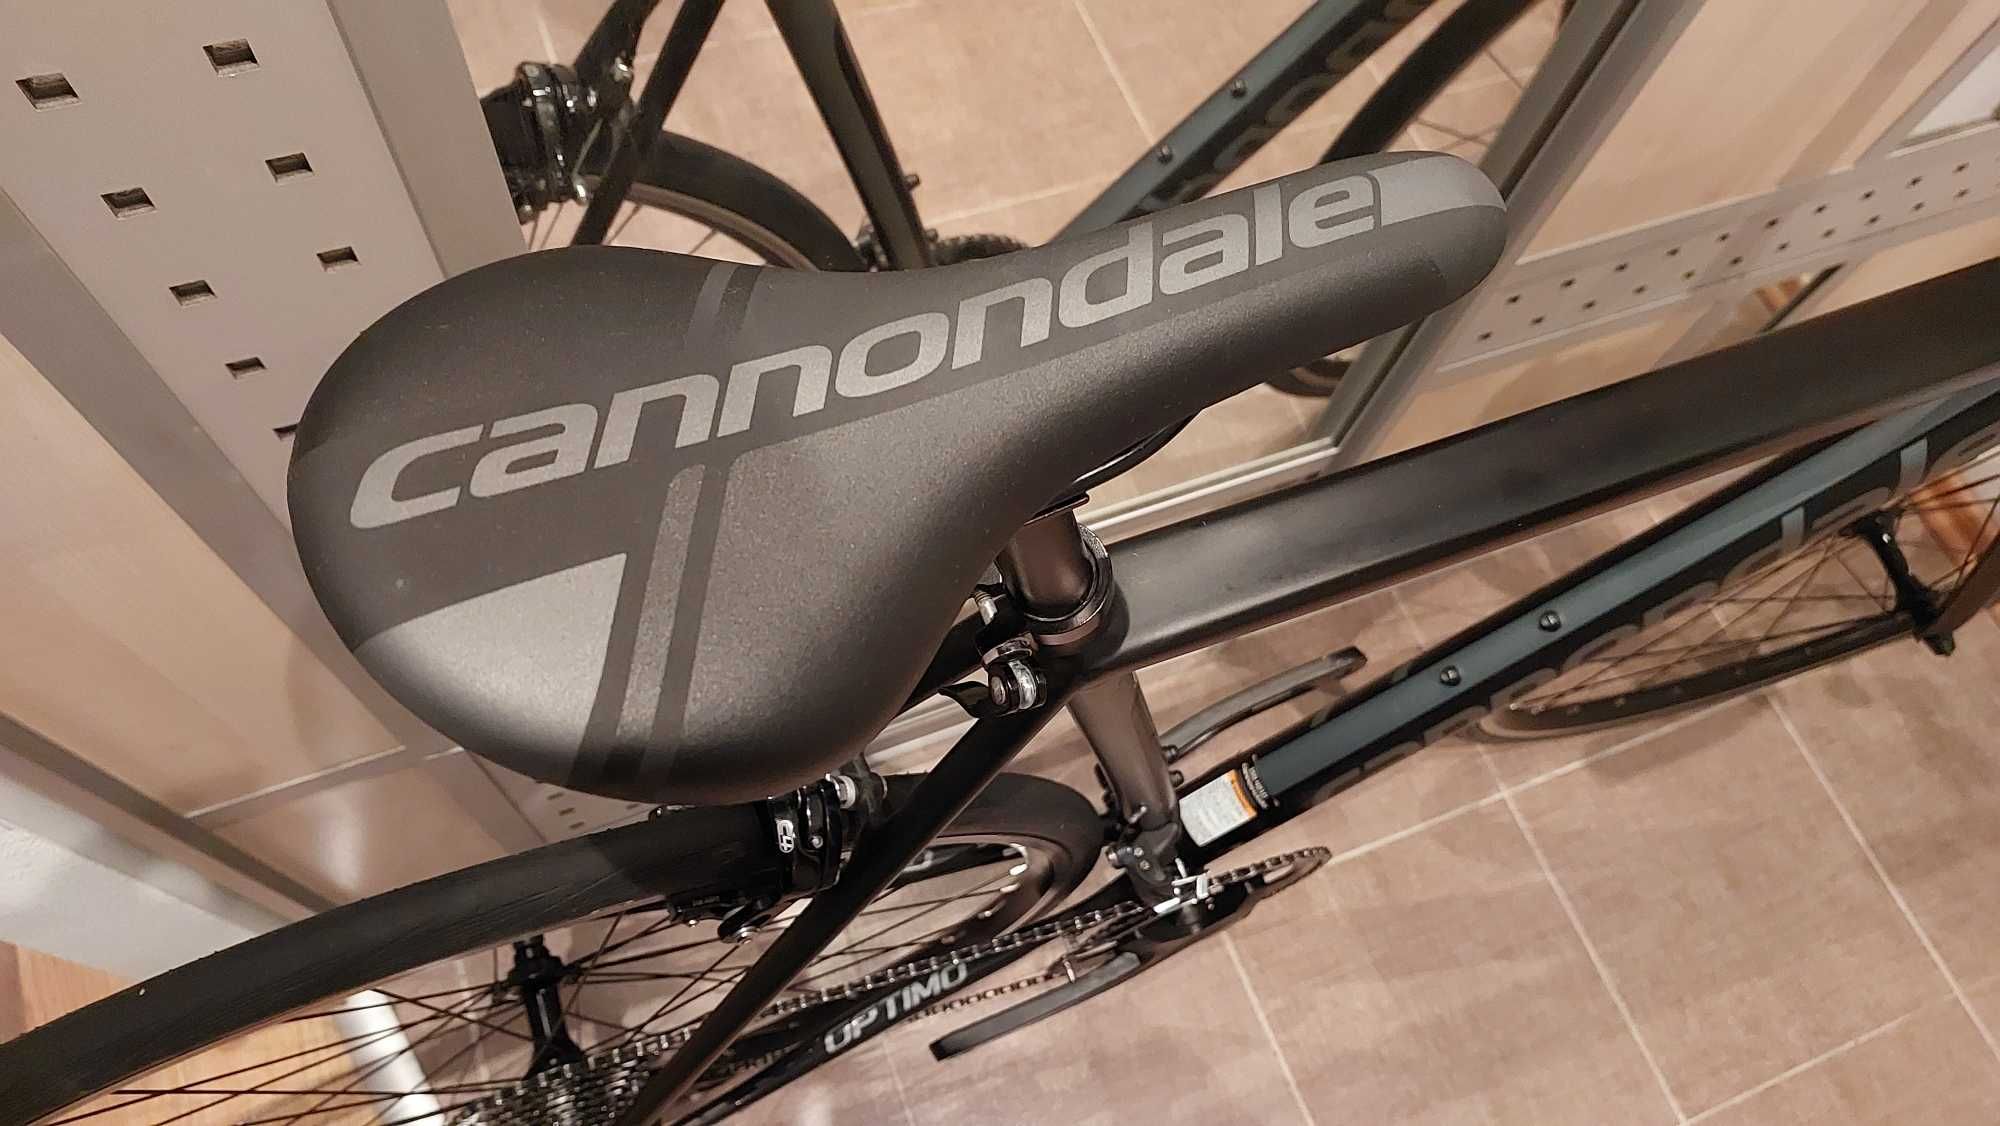 Шоссейный Cannondale  OPTIMO велотуфли педали велостанок